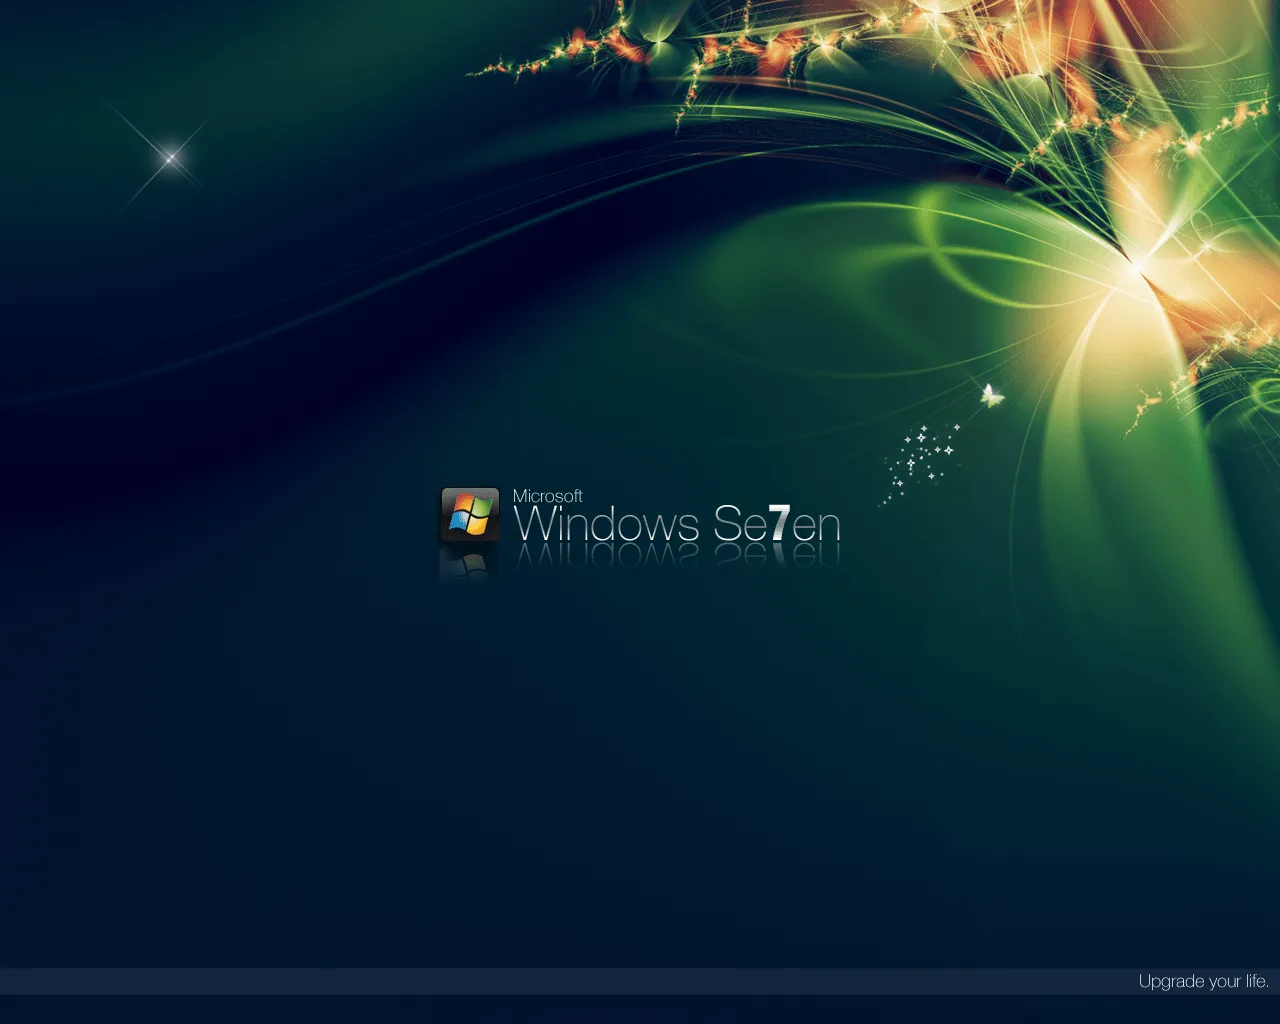 windows 7 es la version mas reciente de microsoft windows linea de ...